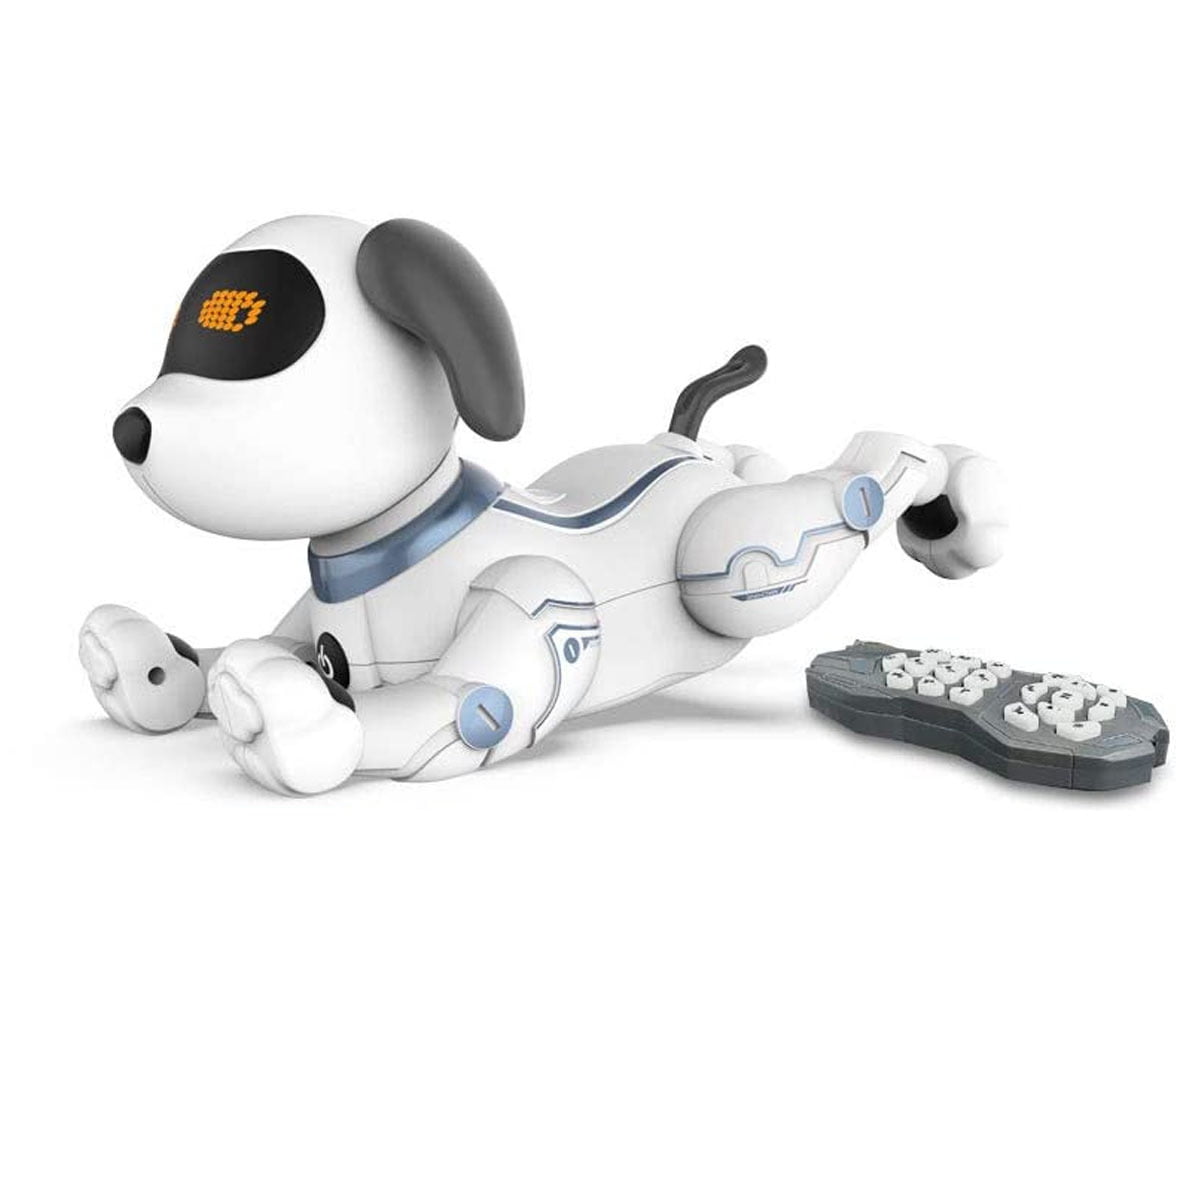 RC Smart Dog Robot Sing Dance Walking Electronic Smart Dog Kids Toys Gift 